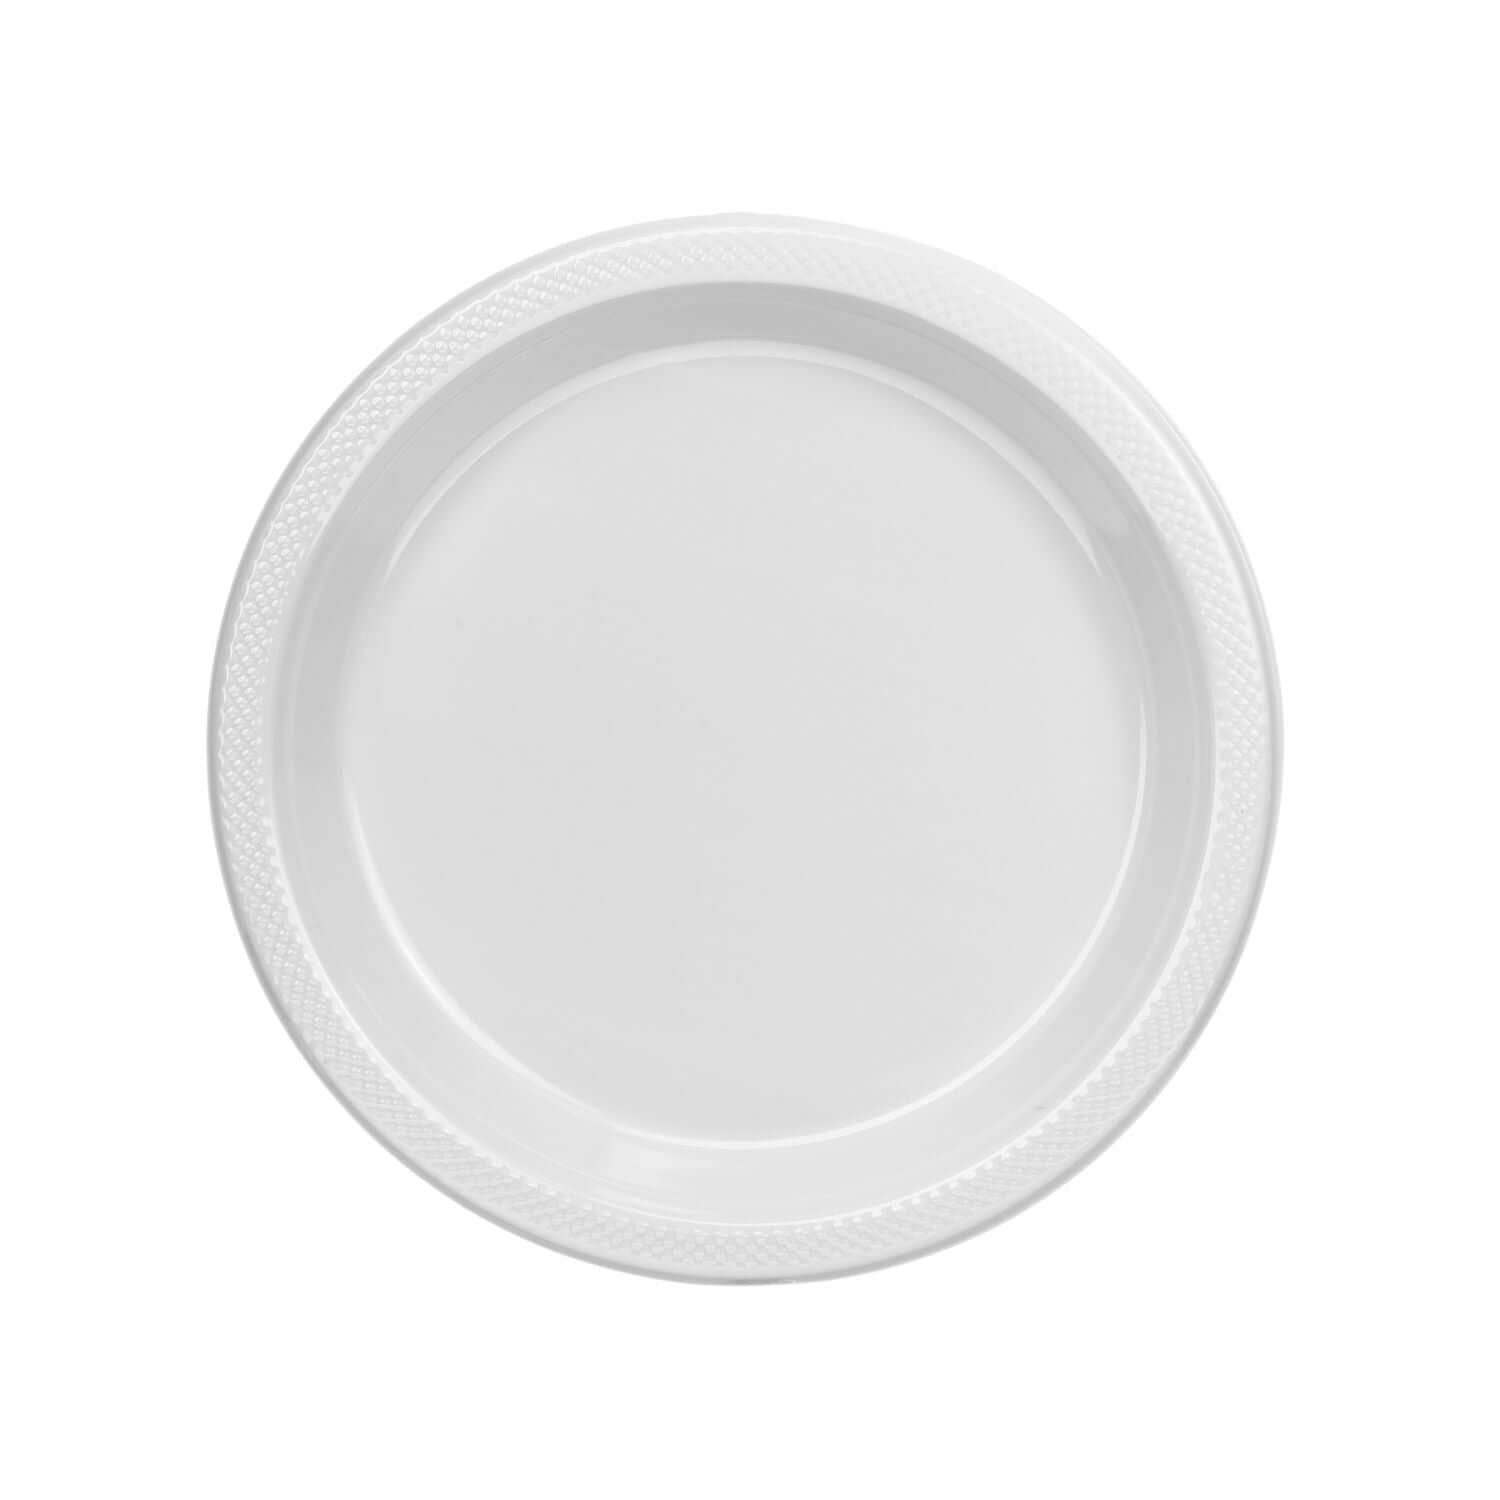 7" | White Plastic Plates | 600 Count - Yom Tov Settings